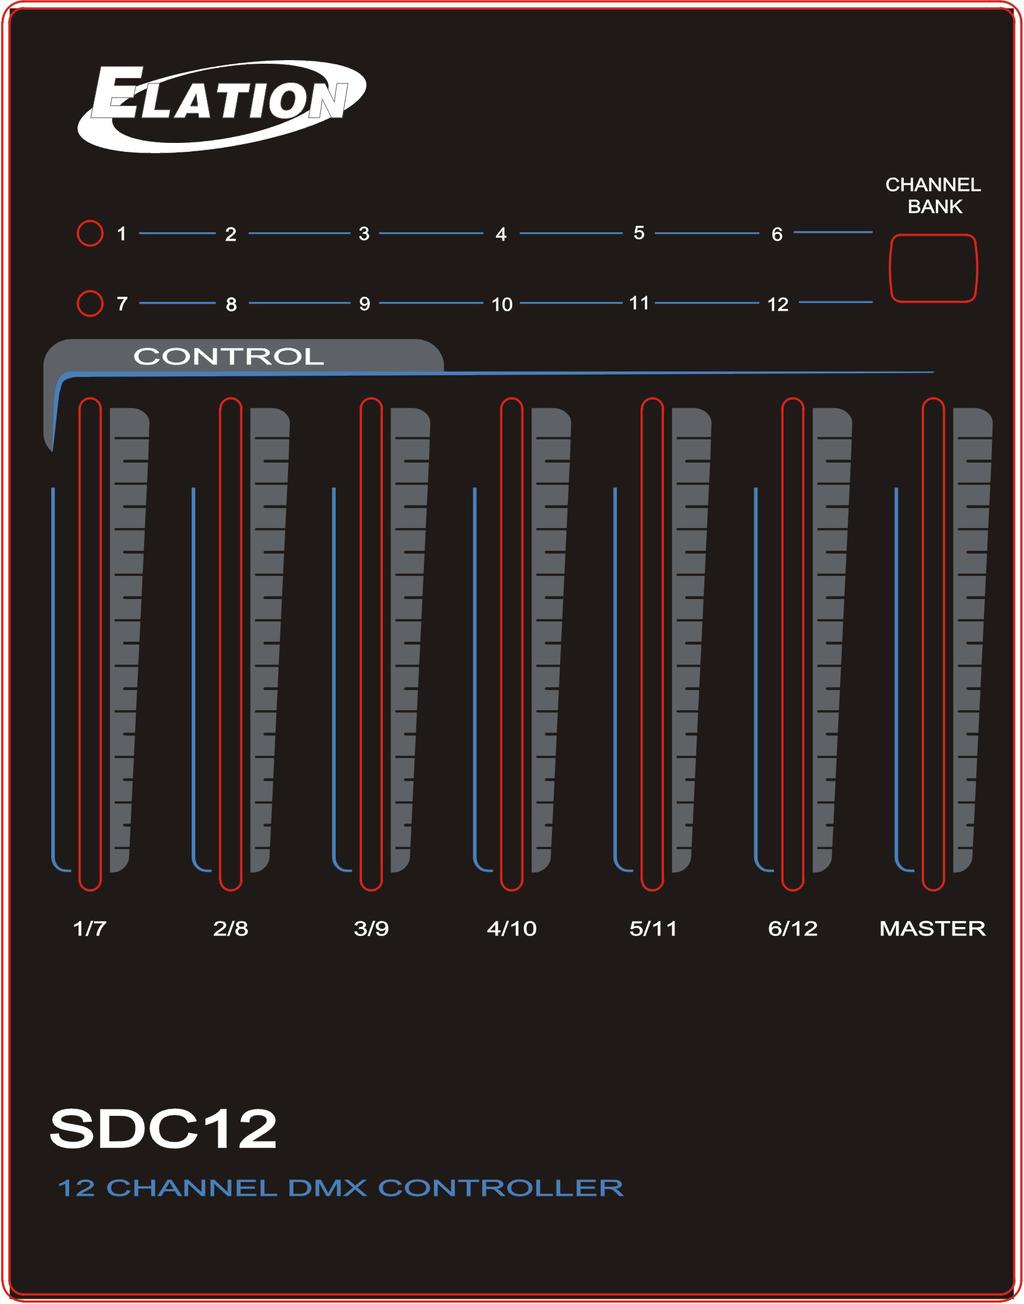 SDC12 user manual 1.